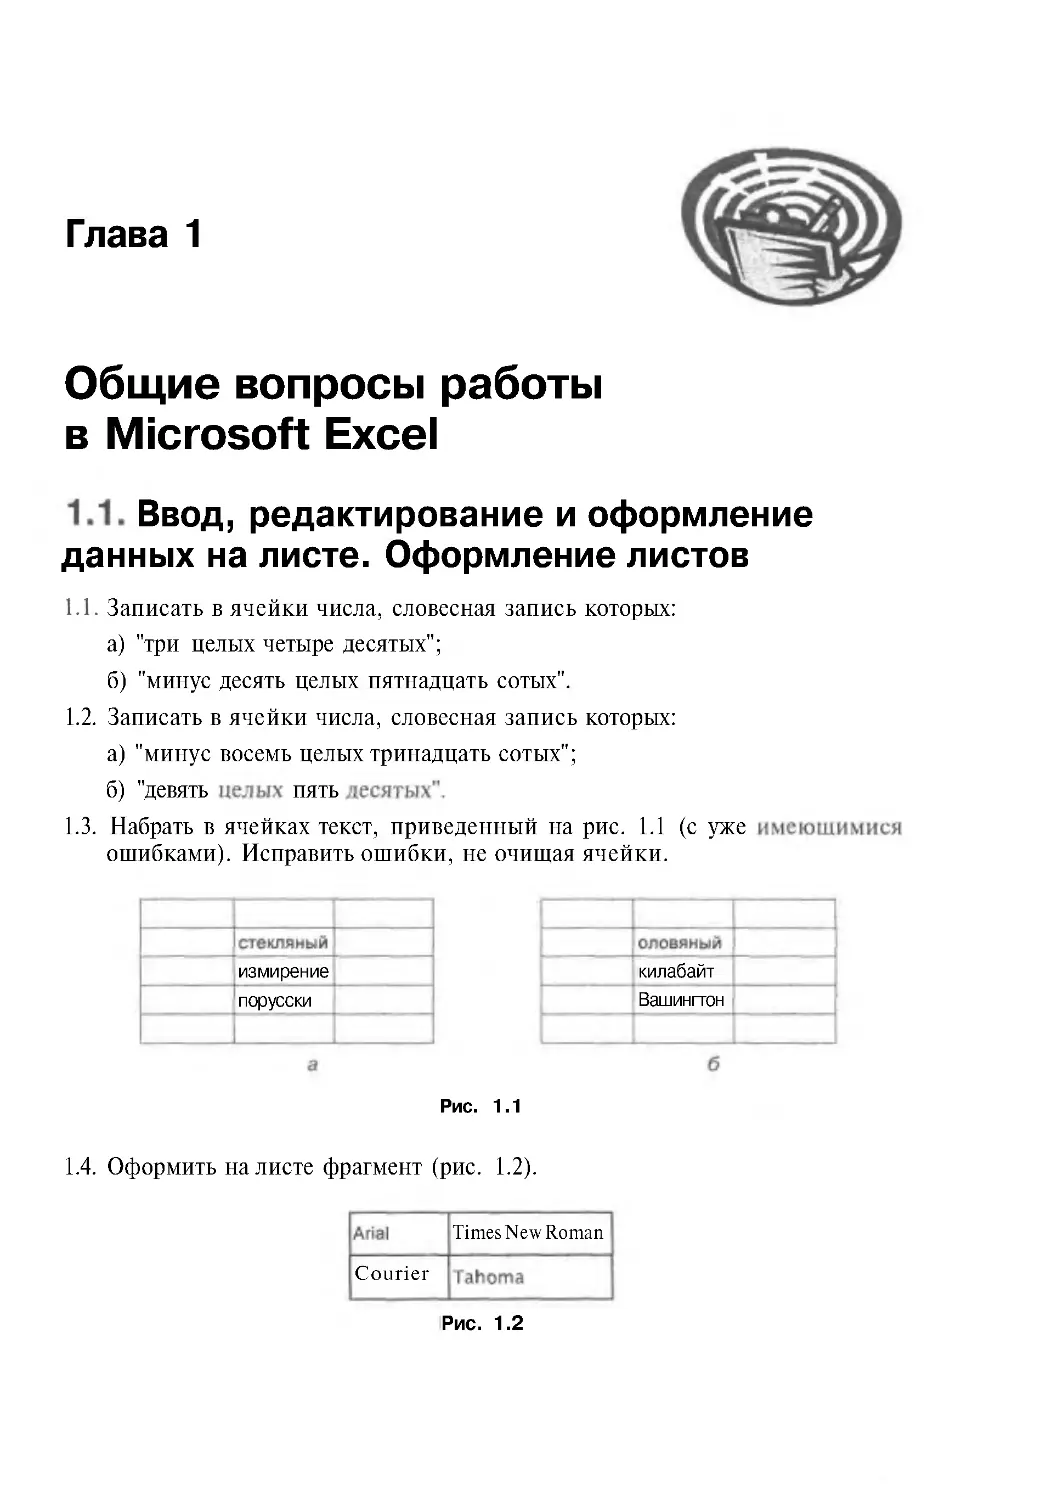 Глава 1. Общие вопросы работы в Microsoft Excel
1.1. Ввод, редактирование и оформление данных на листе.Оформление листов